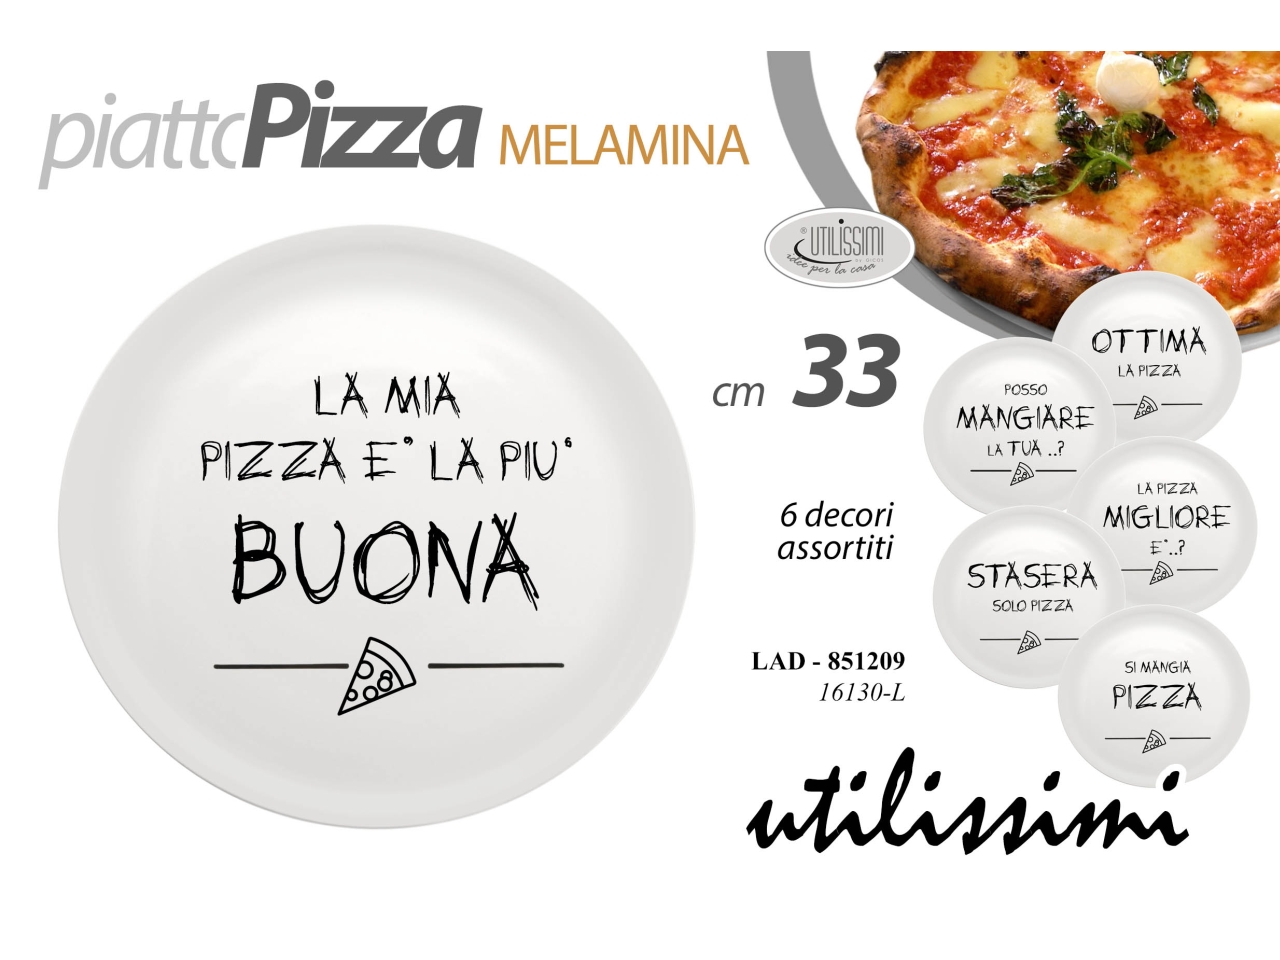 Piatto pizza in melamina diametro 33cm - disponibile in 6 decori assortiti